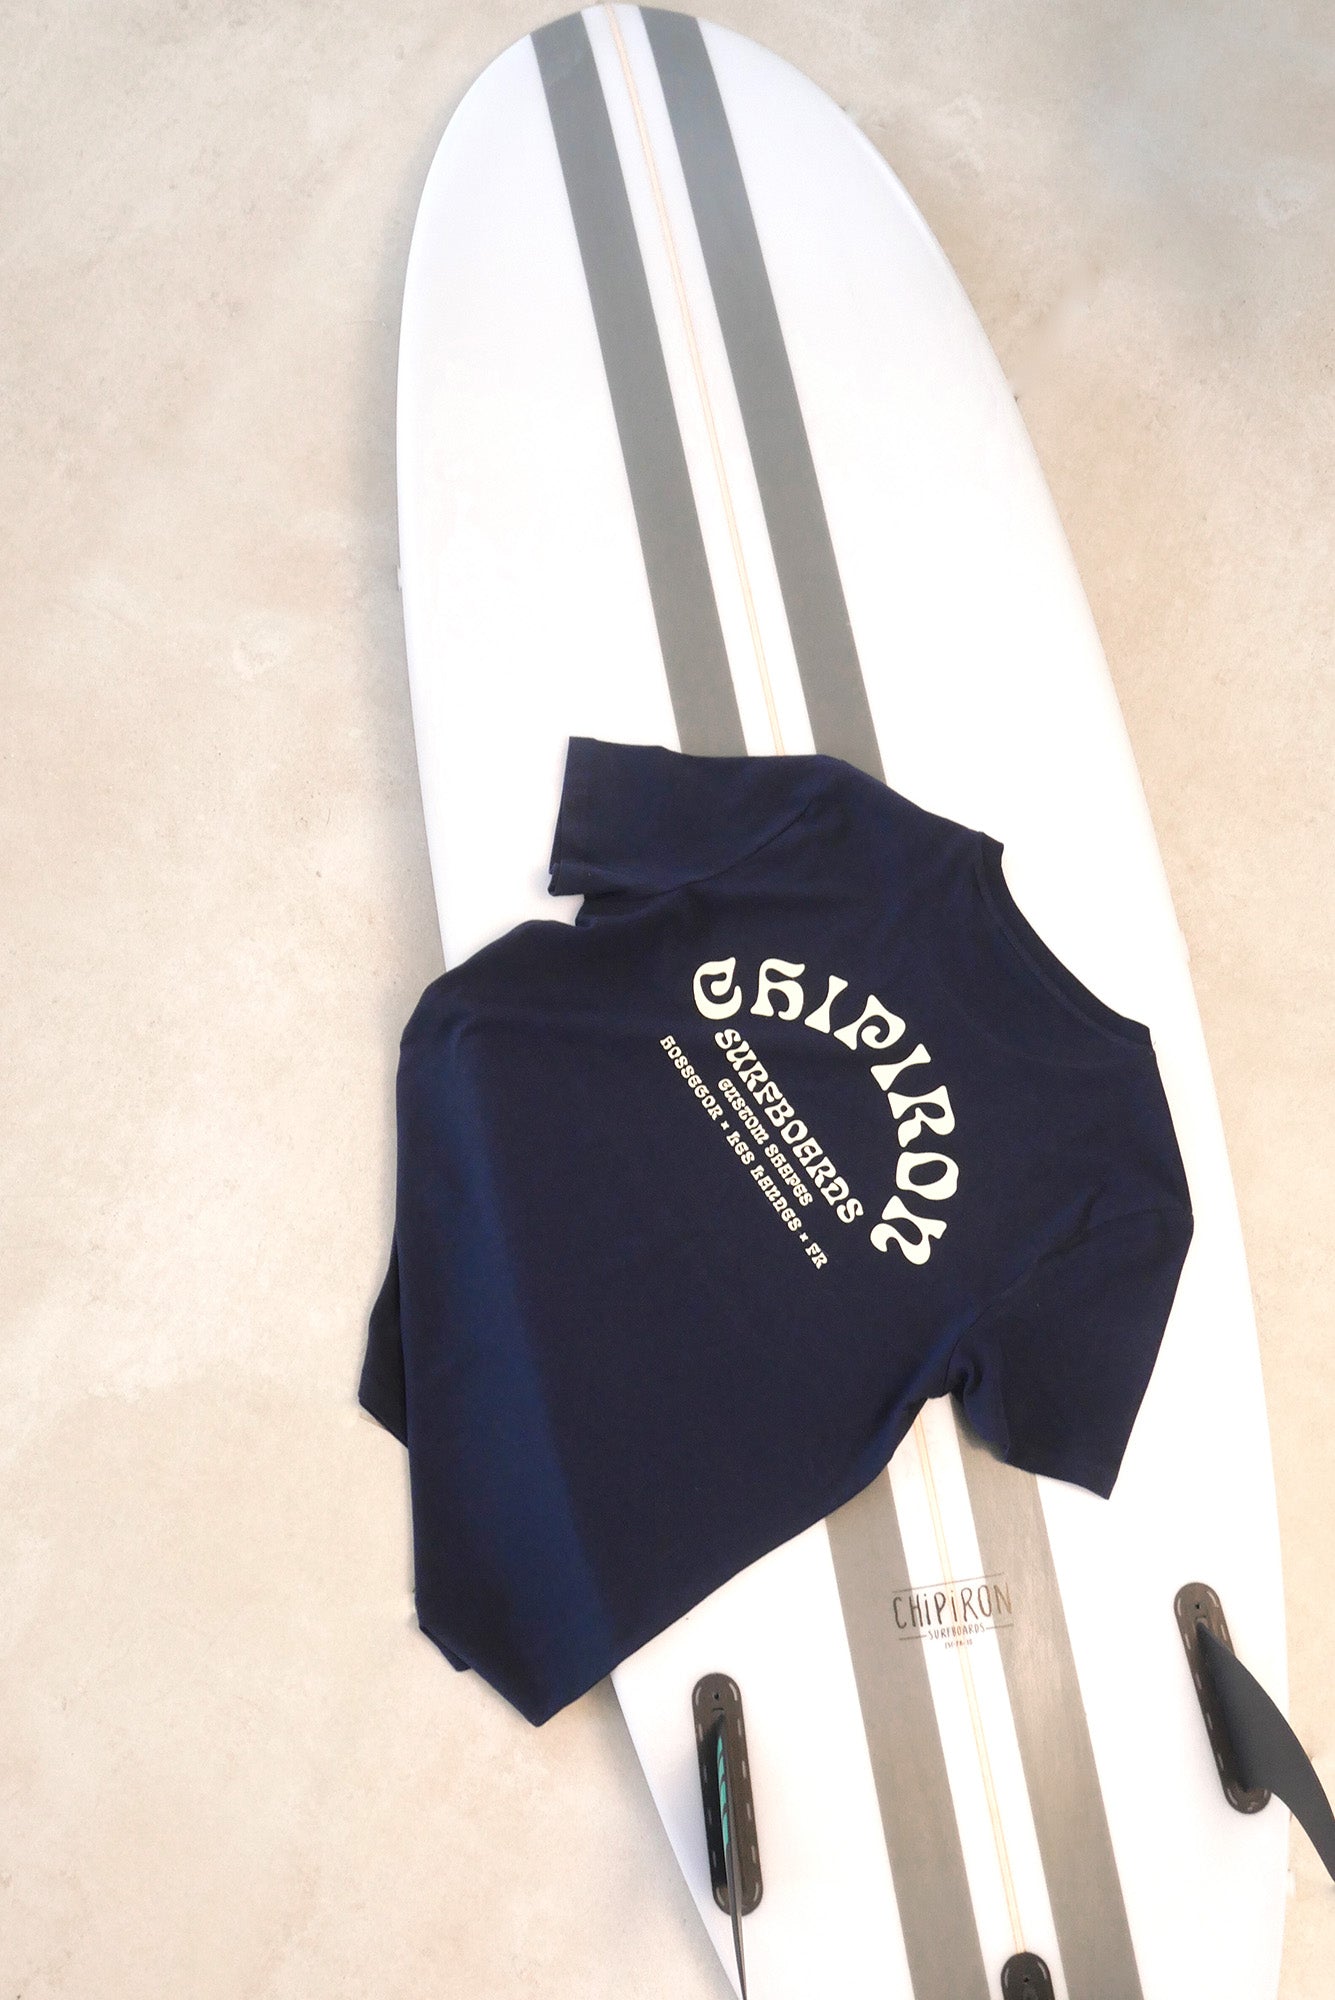 tshirt-navy-custom-shapes-chipiron-surfboards-ss23-dos